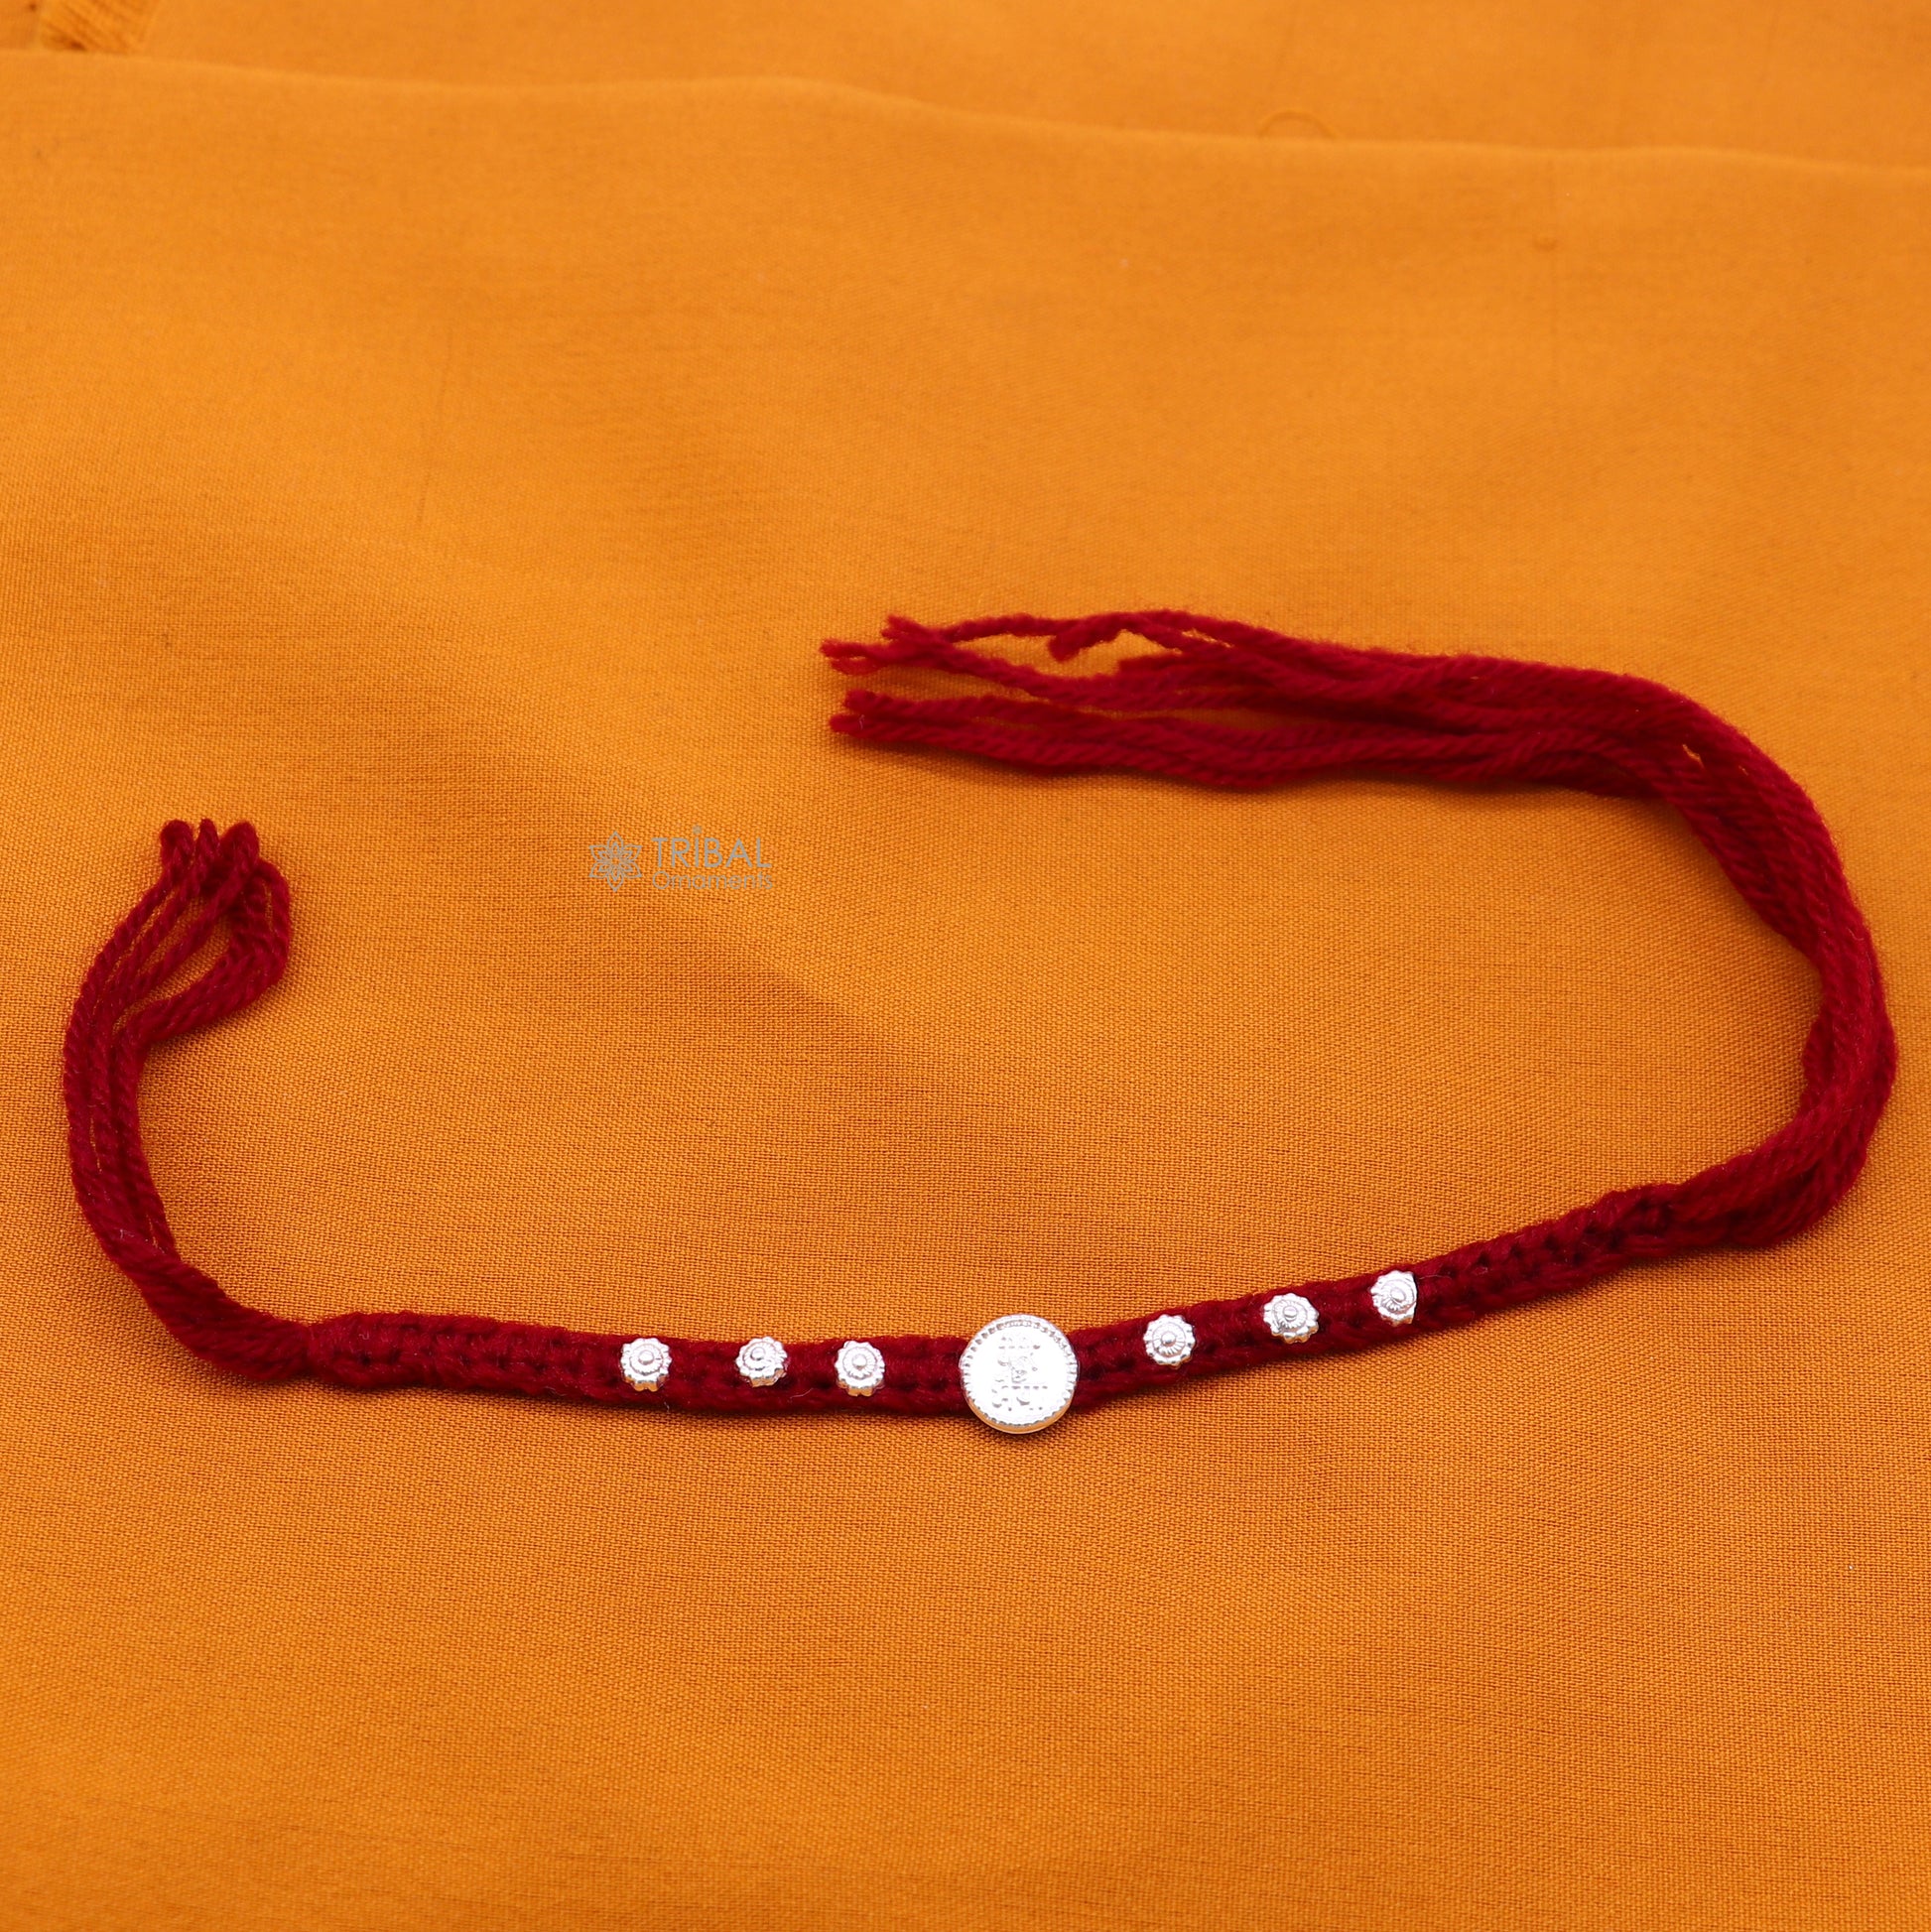 Classic red color threads Silver customized design Rakhi bracelet Best sibling rakhi for Festival Rakshabandhan rk298 - TRIBAL ORNAMENTS